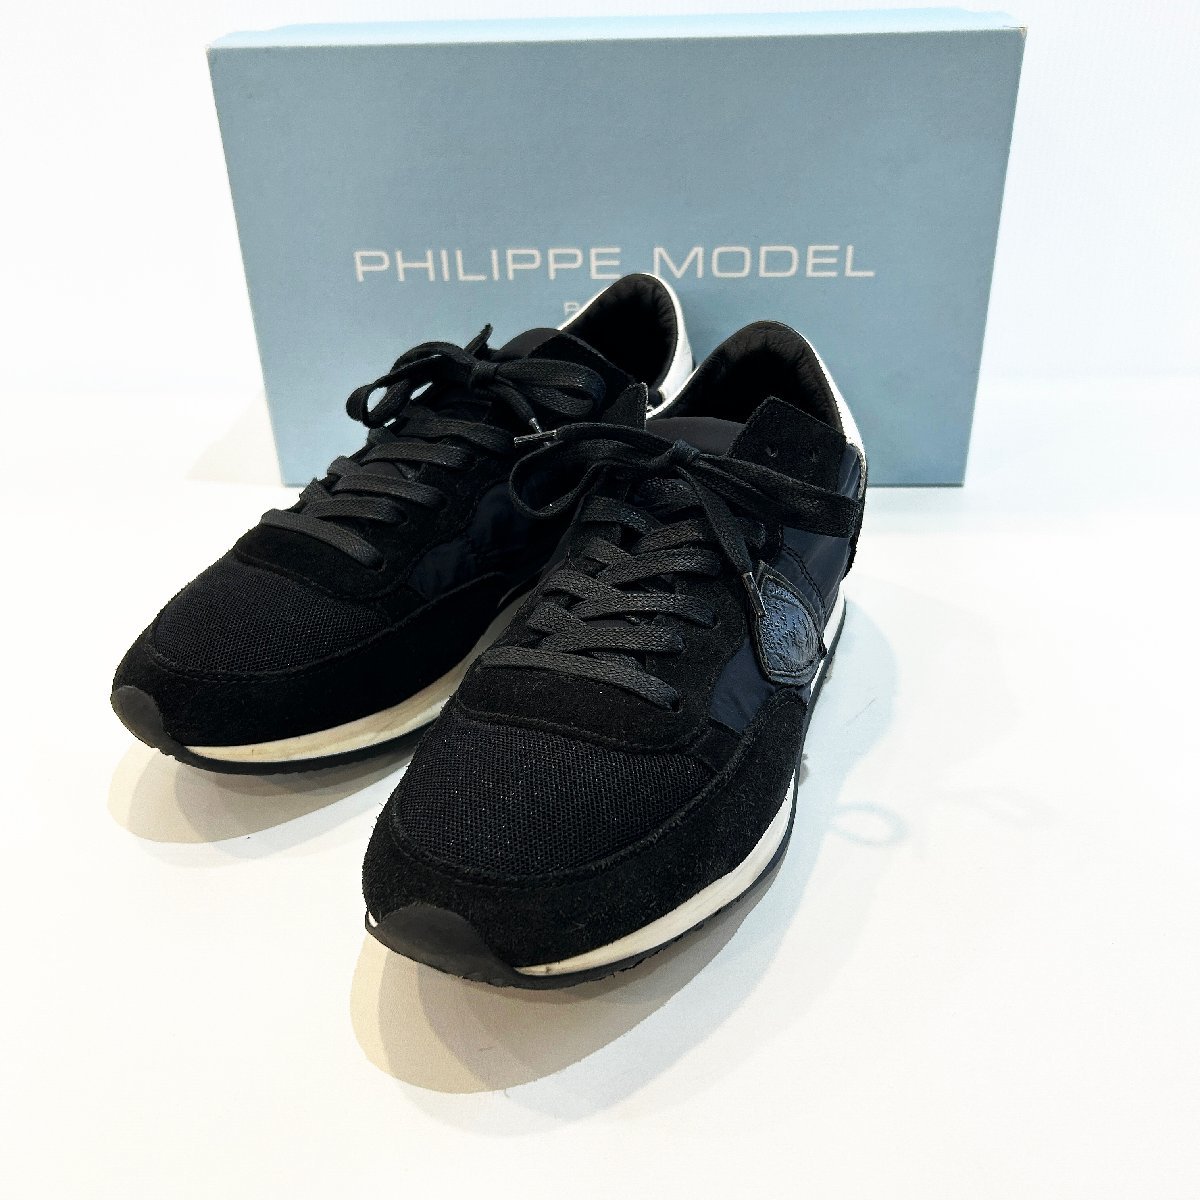 PHILIPPE MODEL フィリップ モデル PM-TRLI 44056-70 黒 ブラック スニーカー ローカット 40 Hs3-64